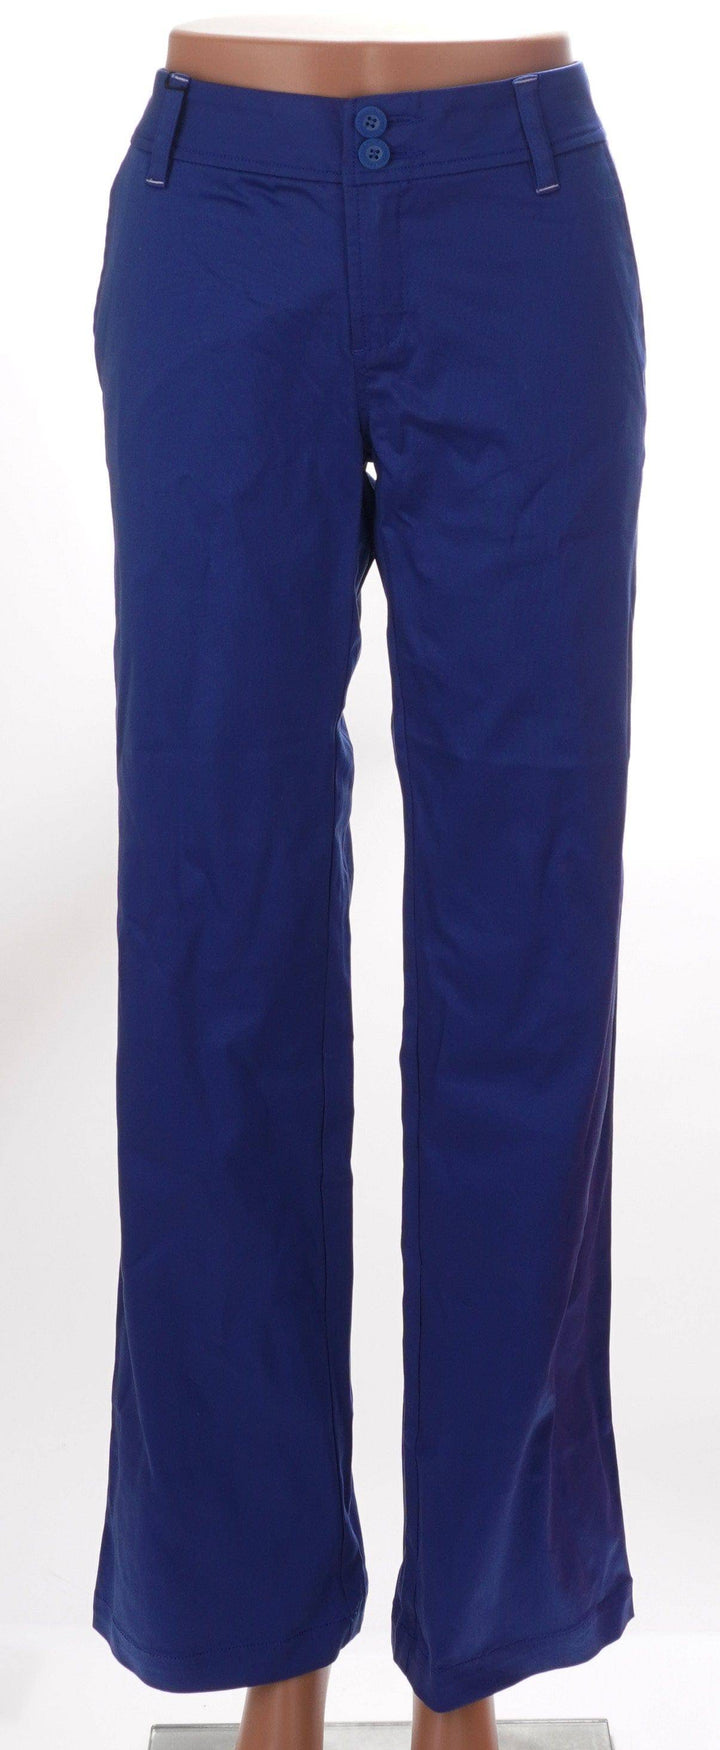 Pahr Blue / 4 / Consigned Pahr Blue Pants - Size 4 Apparel & Accessories